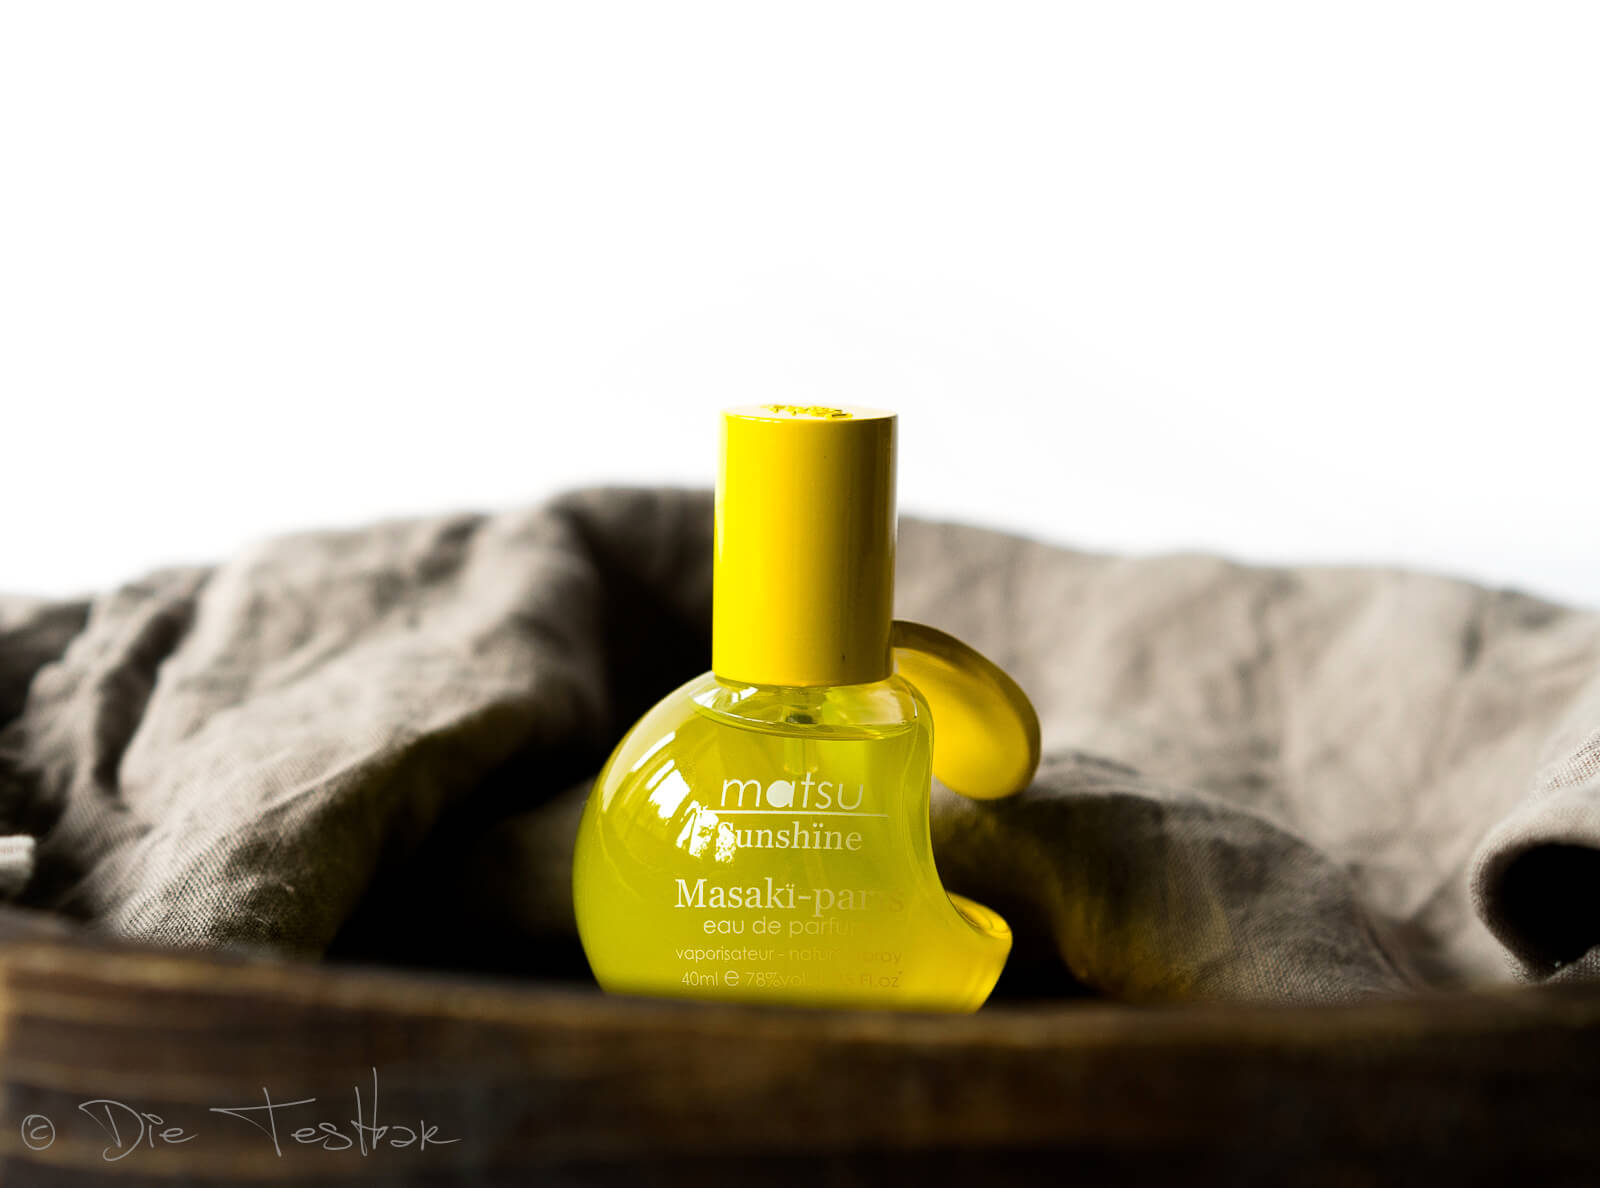 Matsu Sunshine und Shiro Eau de Parfum Spray von Masakï Matsushïma 5